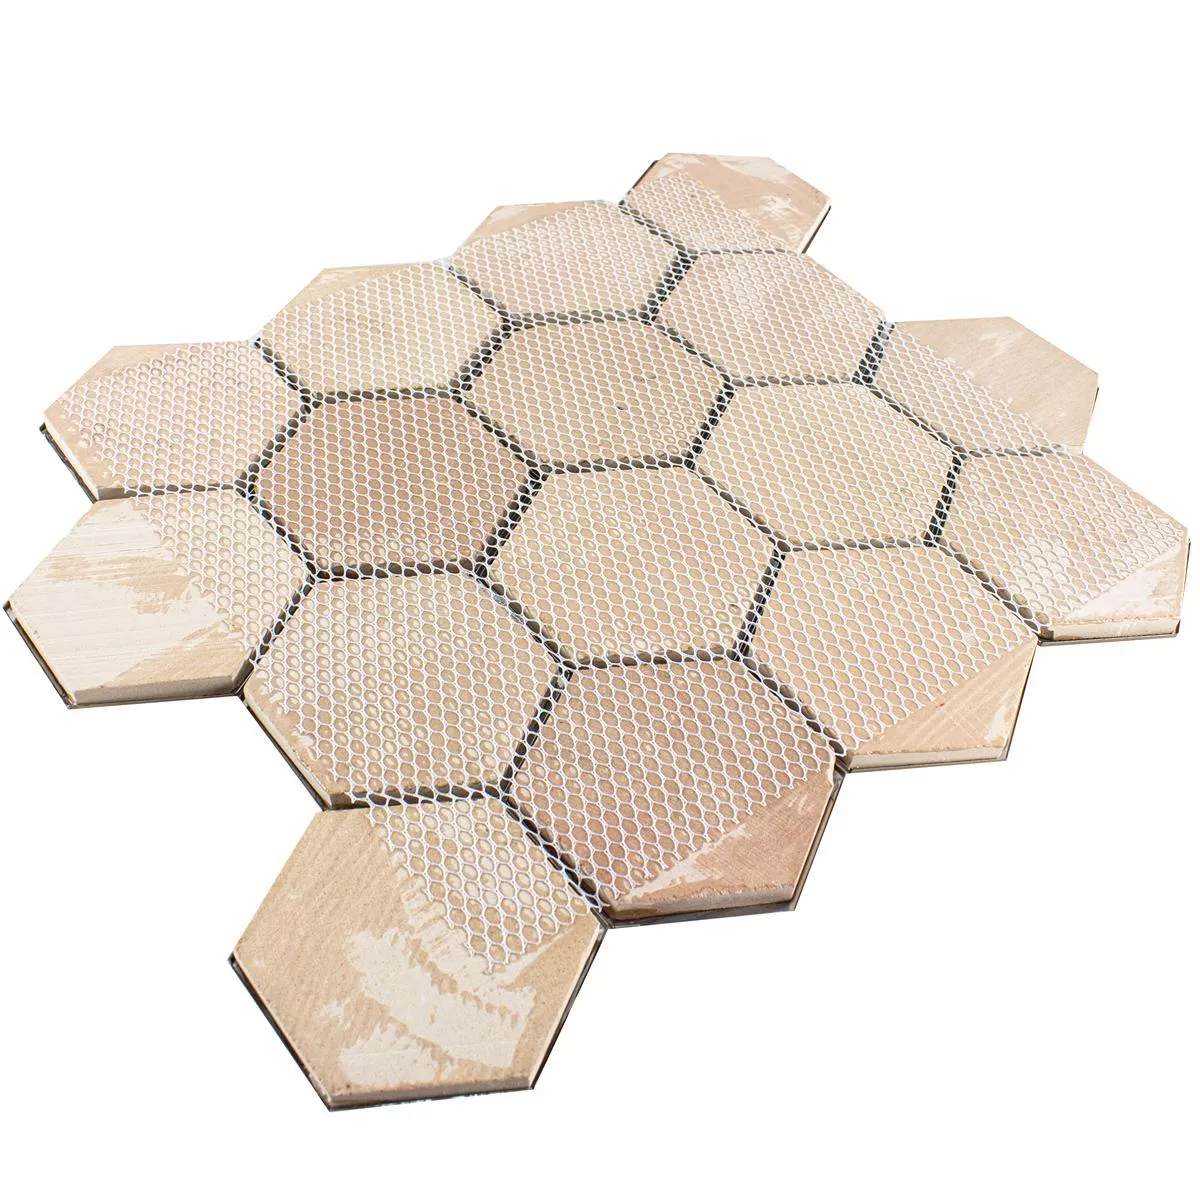 Edelstahl Mosaikfliesen Durango Hexagon 3D Silber